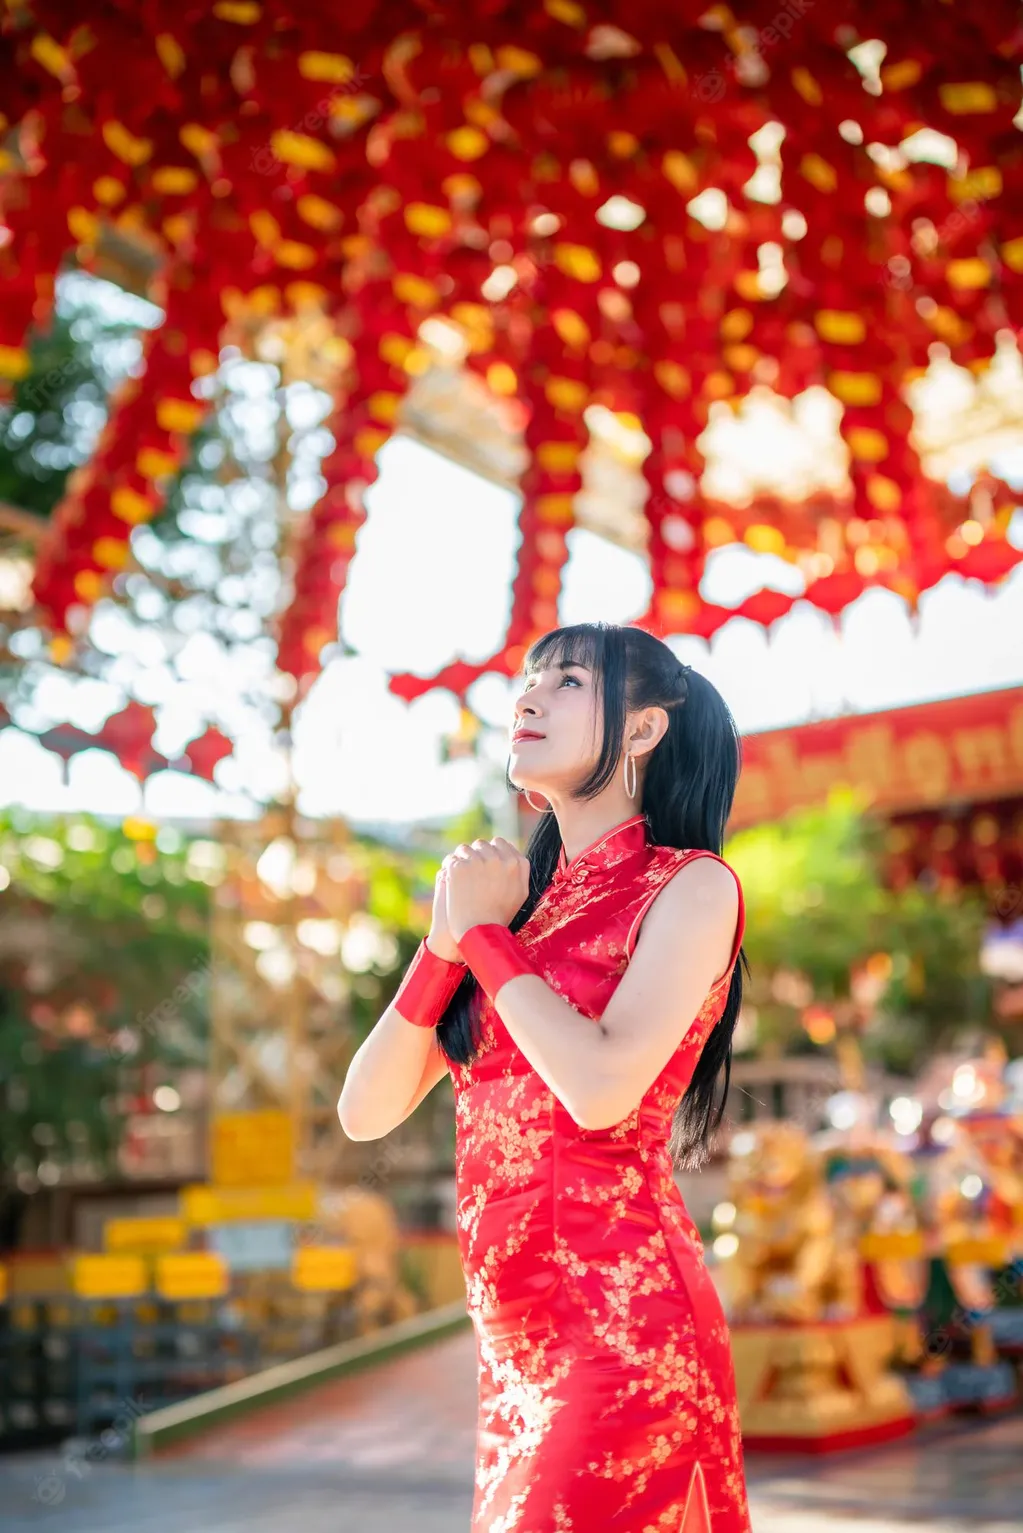 Año nuevo chino: el significado detrás de vestir de rojo.